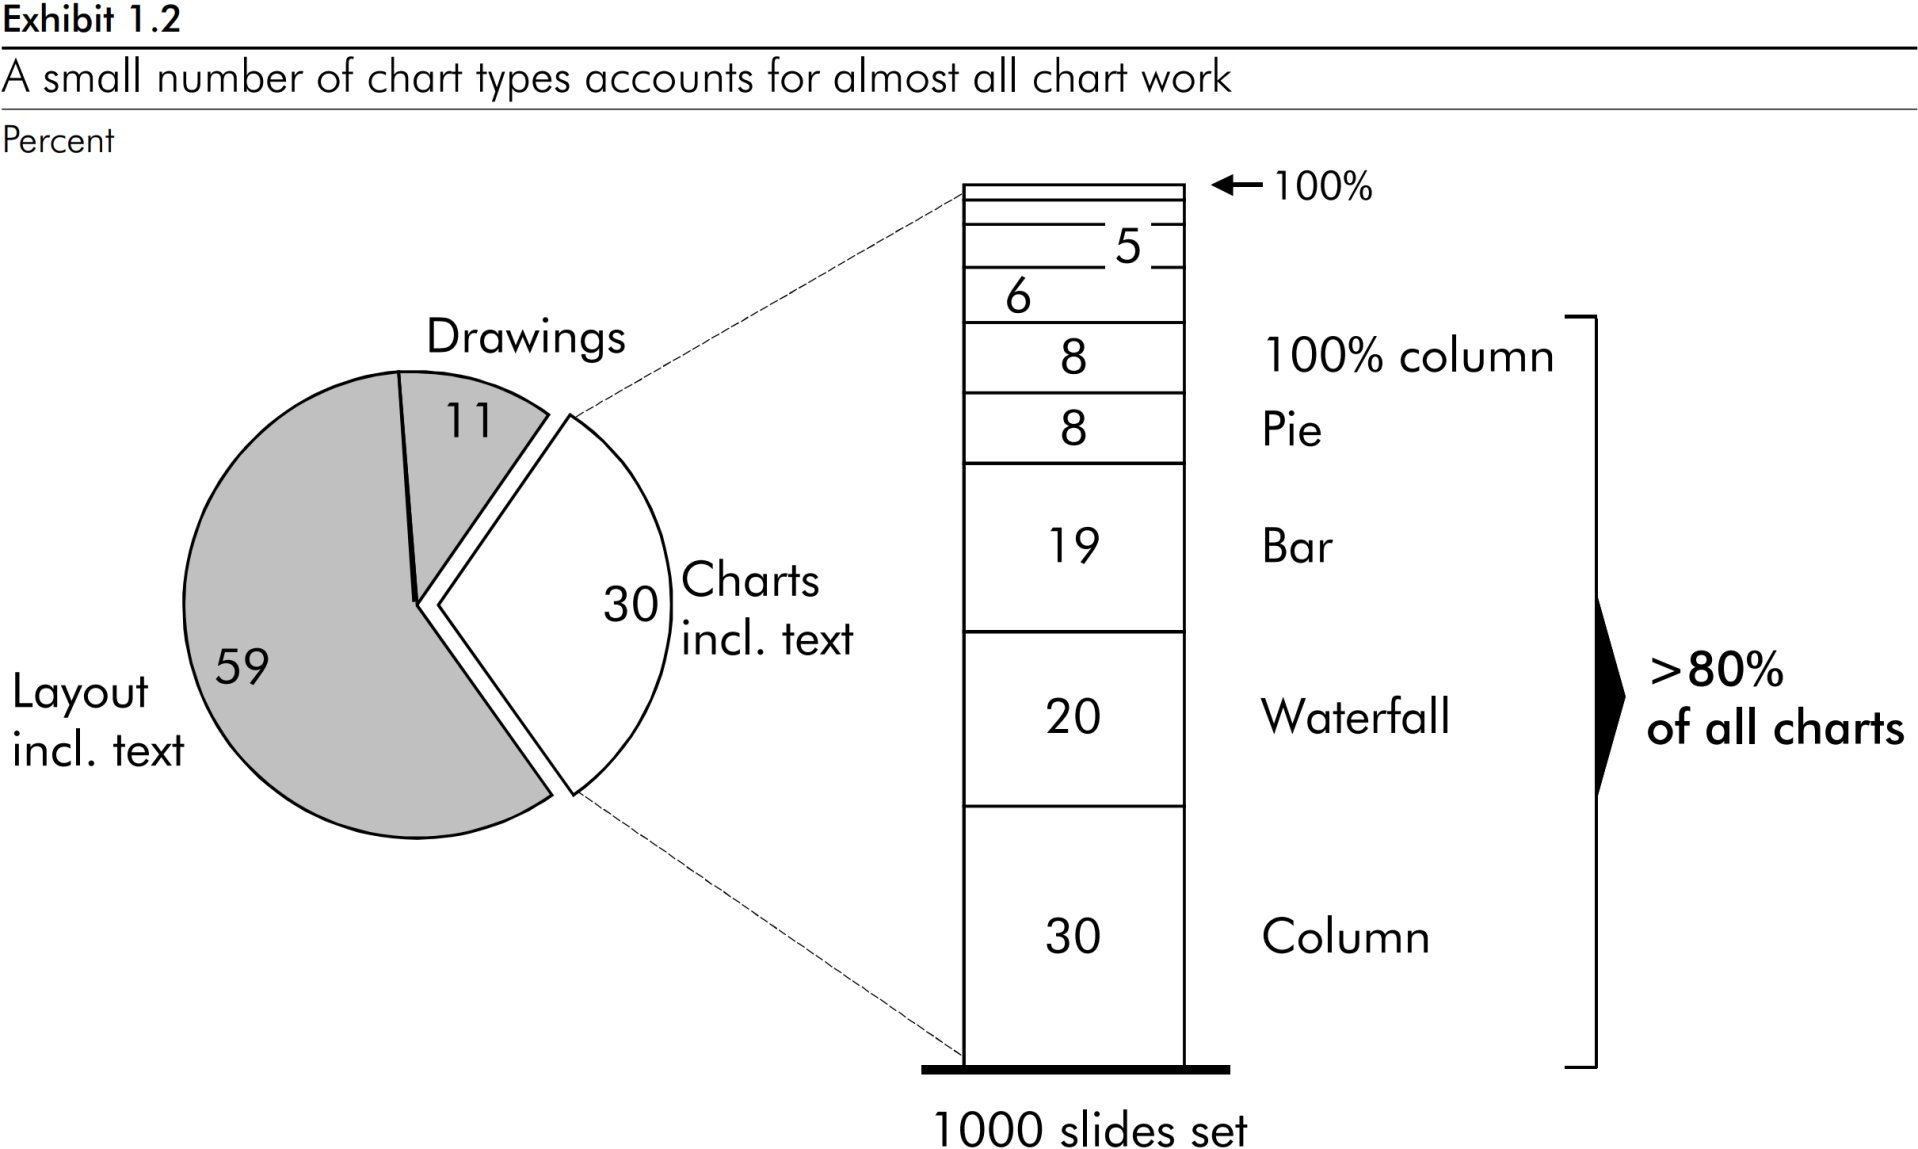 Gráfico circular que muestra que el 85 % del trabajo de toda la producción de gráficos se realiza mediante 5 tipos de gráficos: columna de 100 %, circular, barra, cascada y columna.